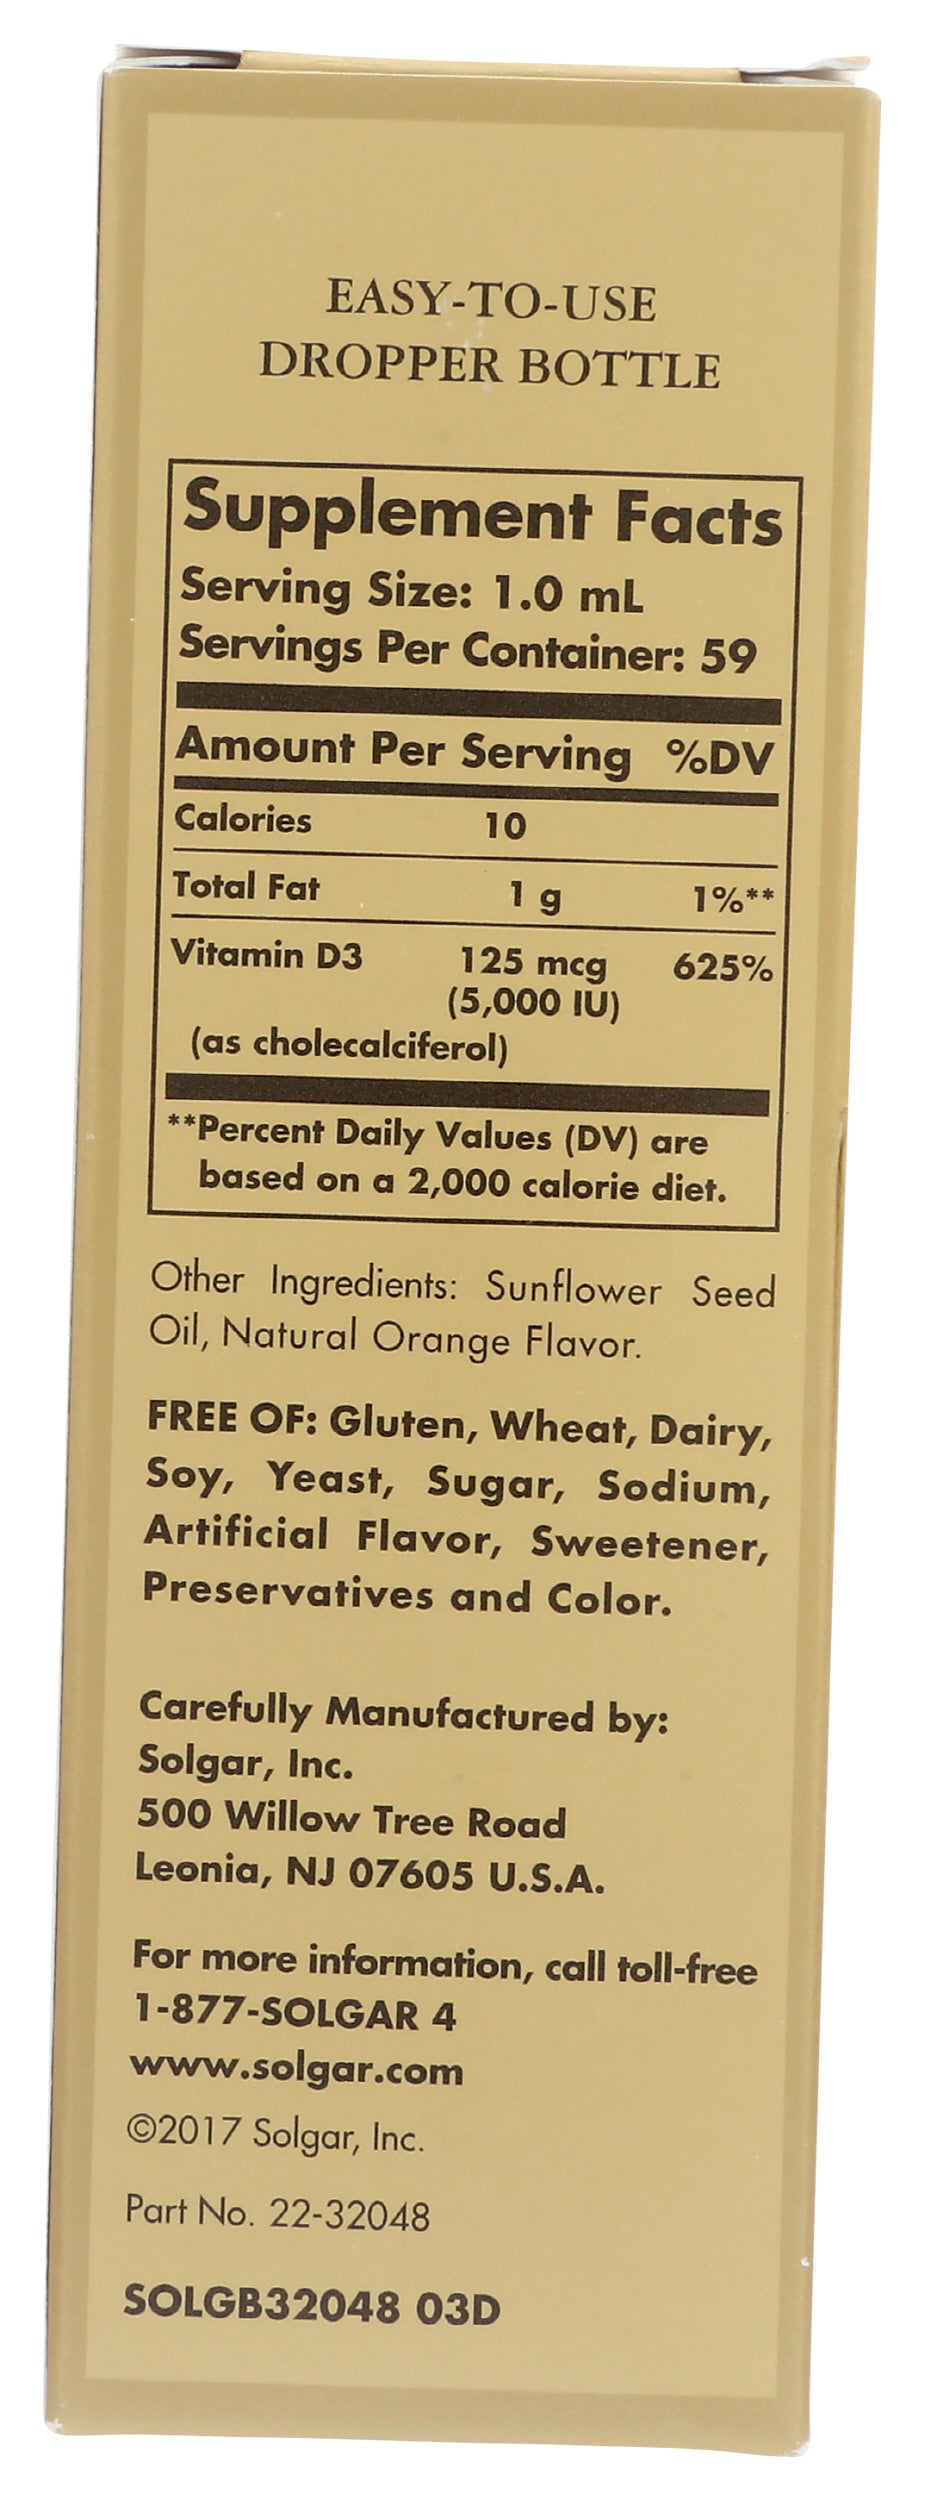 Solgar Liquid Vitamin D3 5,000 IU 2 fl oz Back of Box